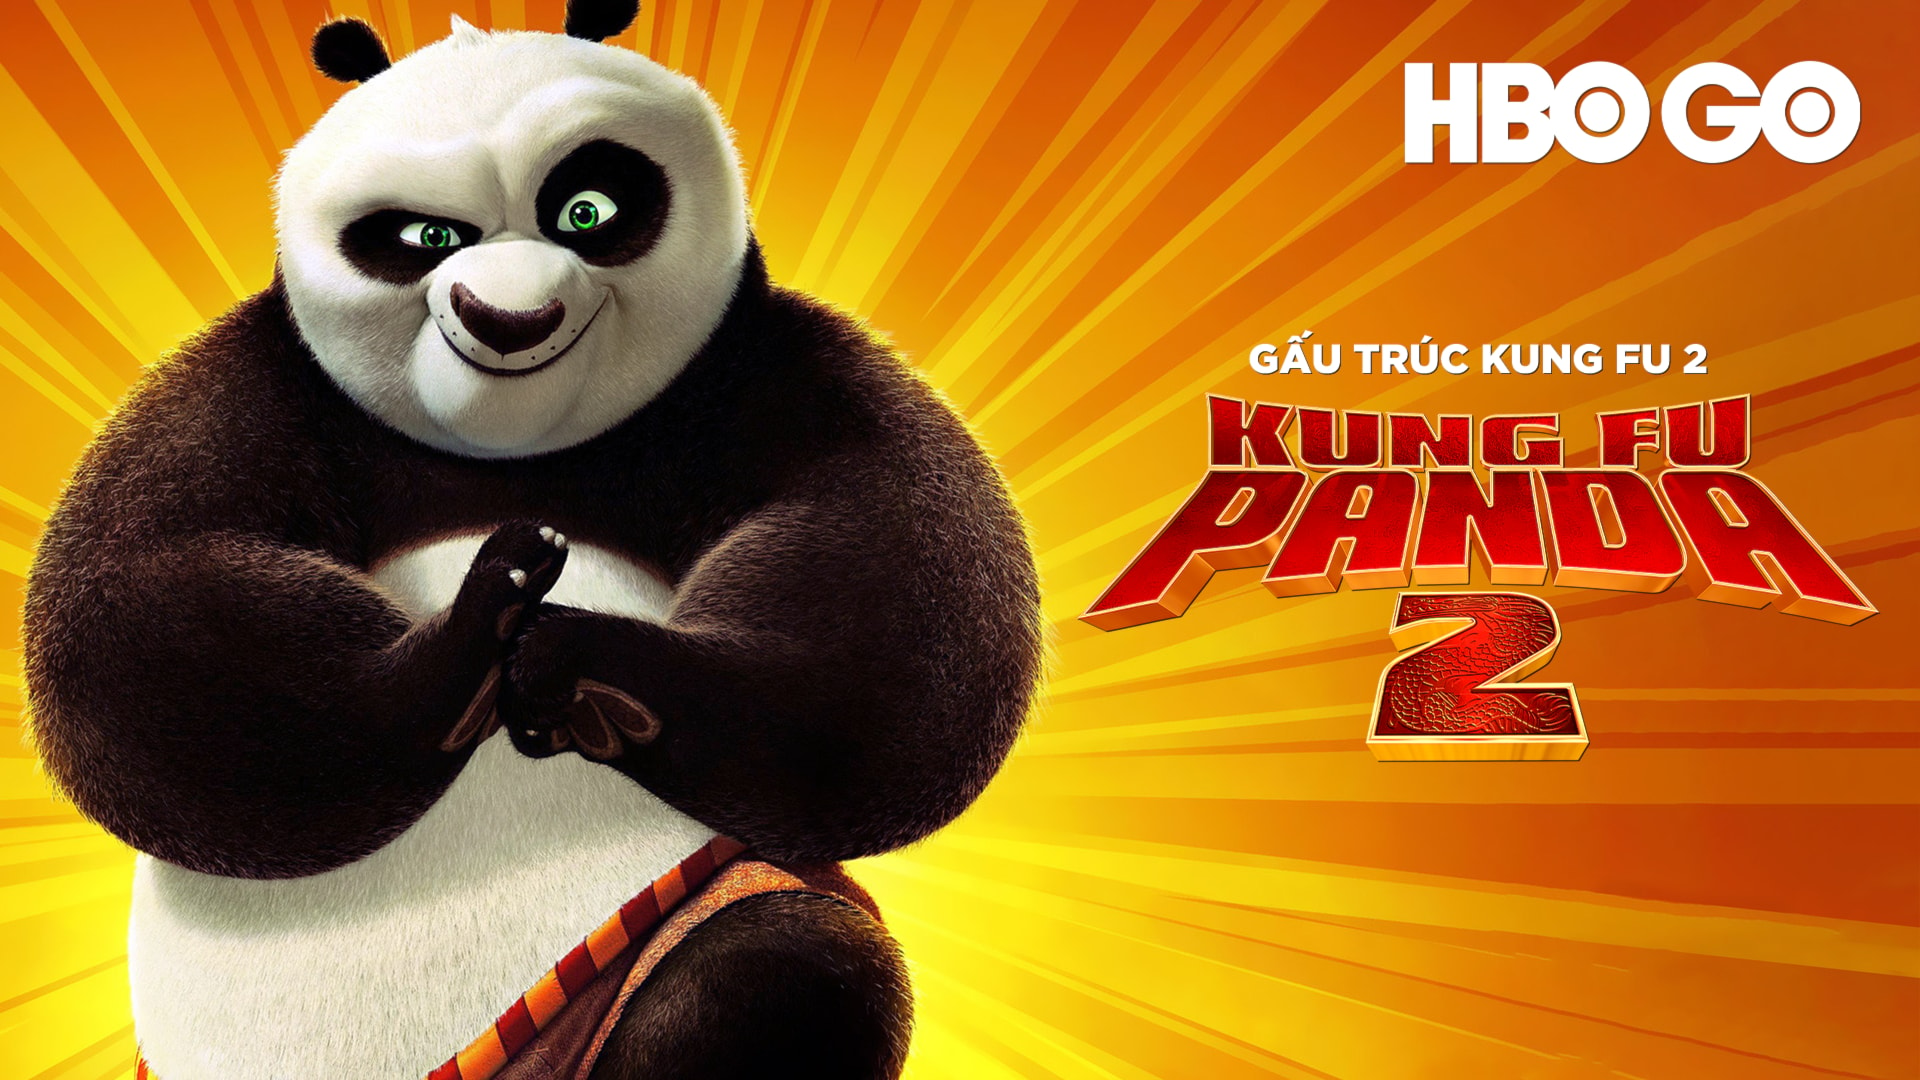 Mua Mô Hình Funko Pop Phim Hoạt Hình Kung Fu Panda  Nhân Vật Po Có Nón  6402  Tiki